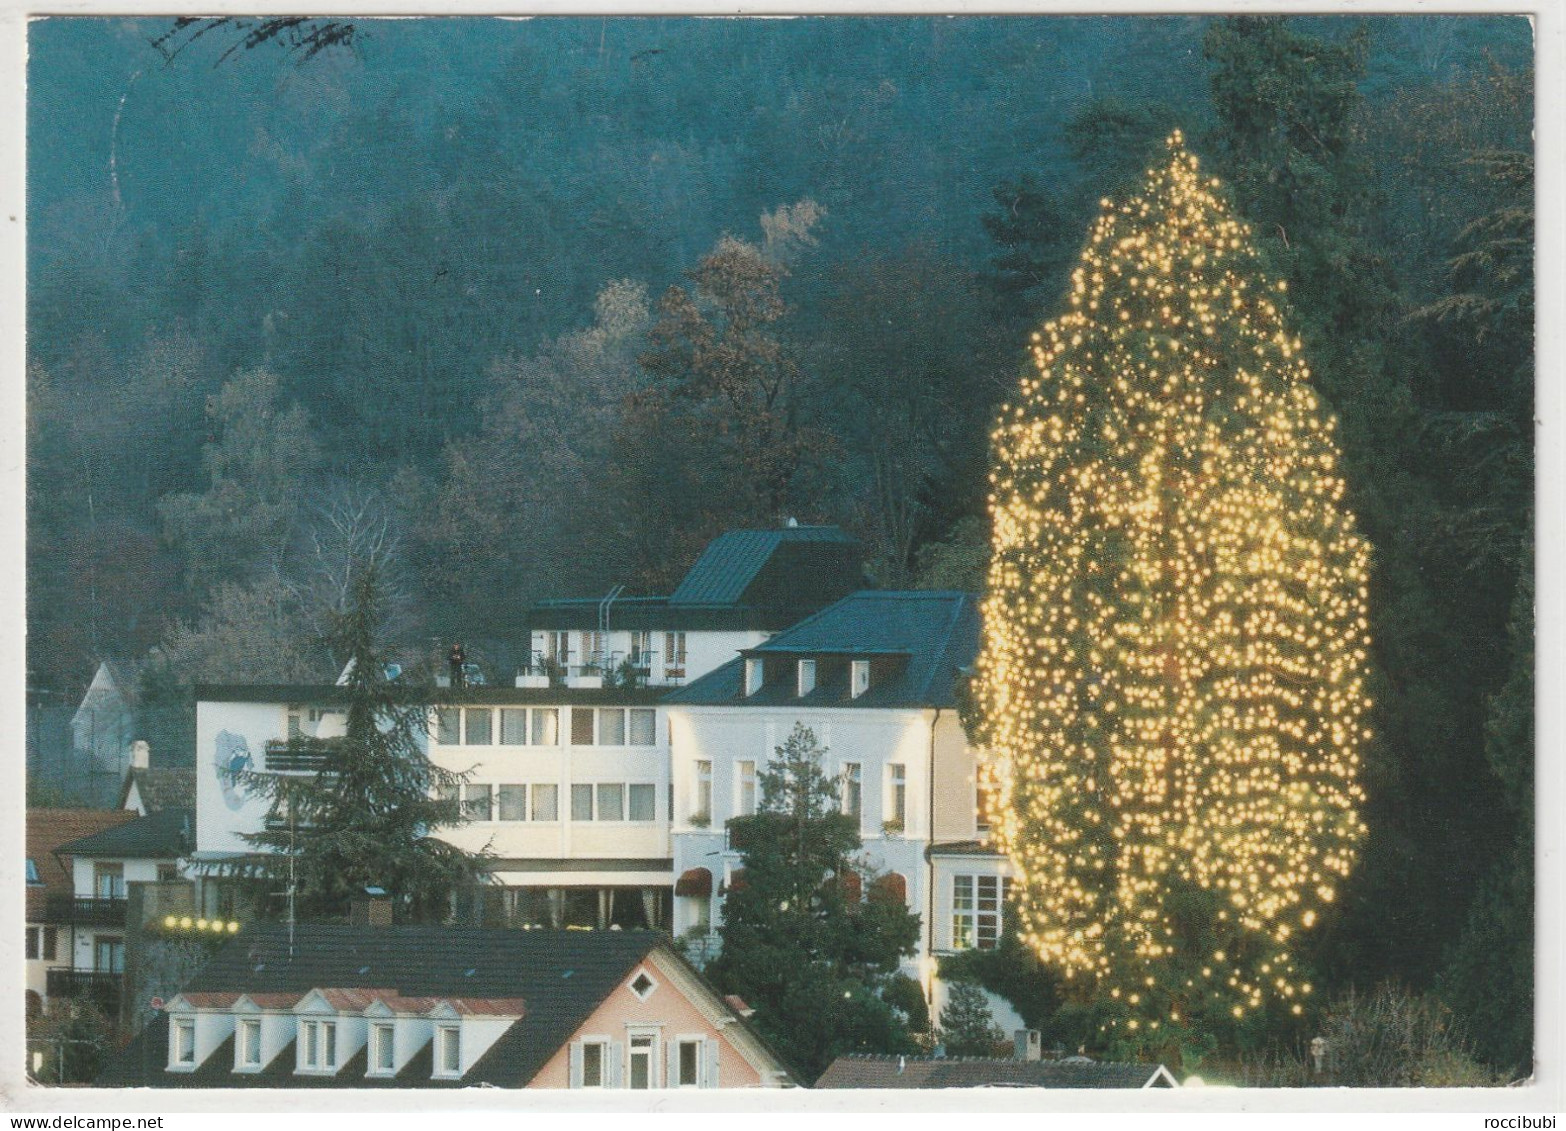 Badenweiler, Schwarzwald, Baden-Württemberg - Badenweiler